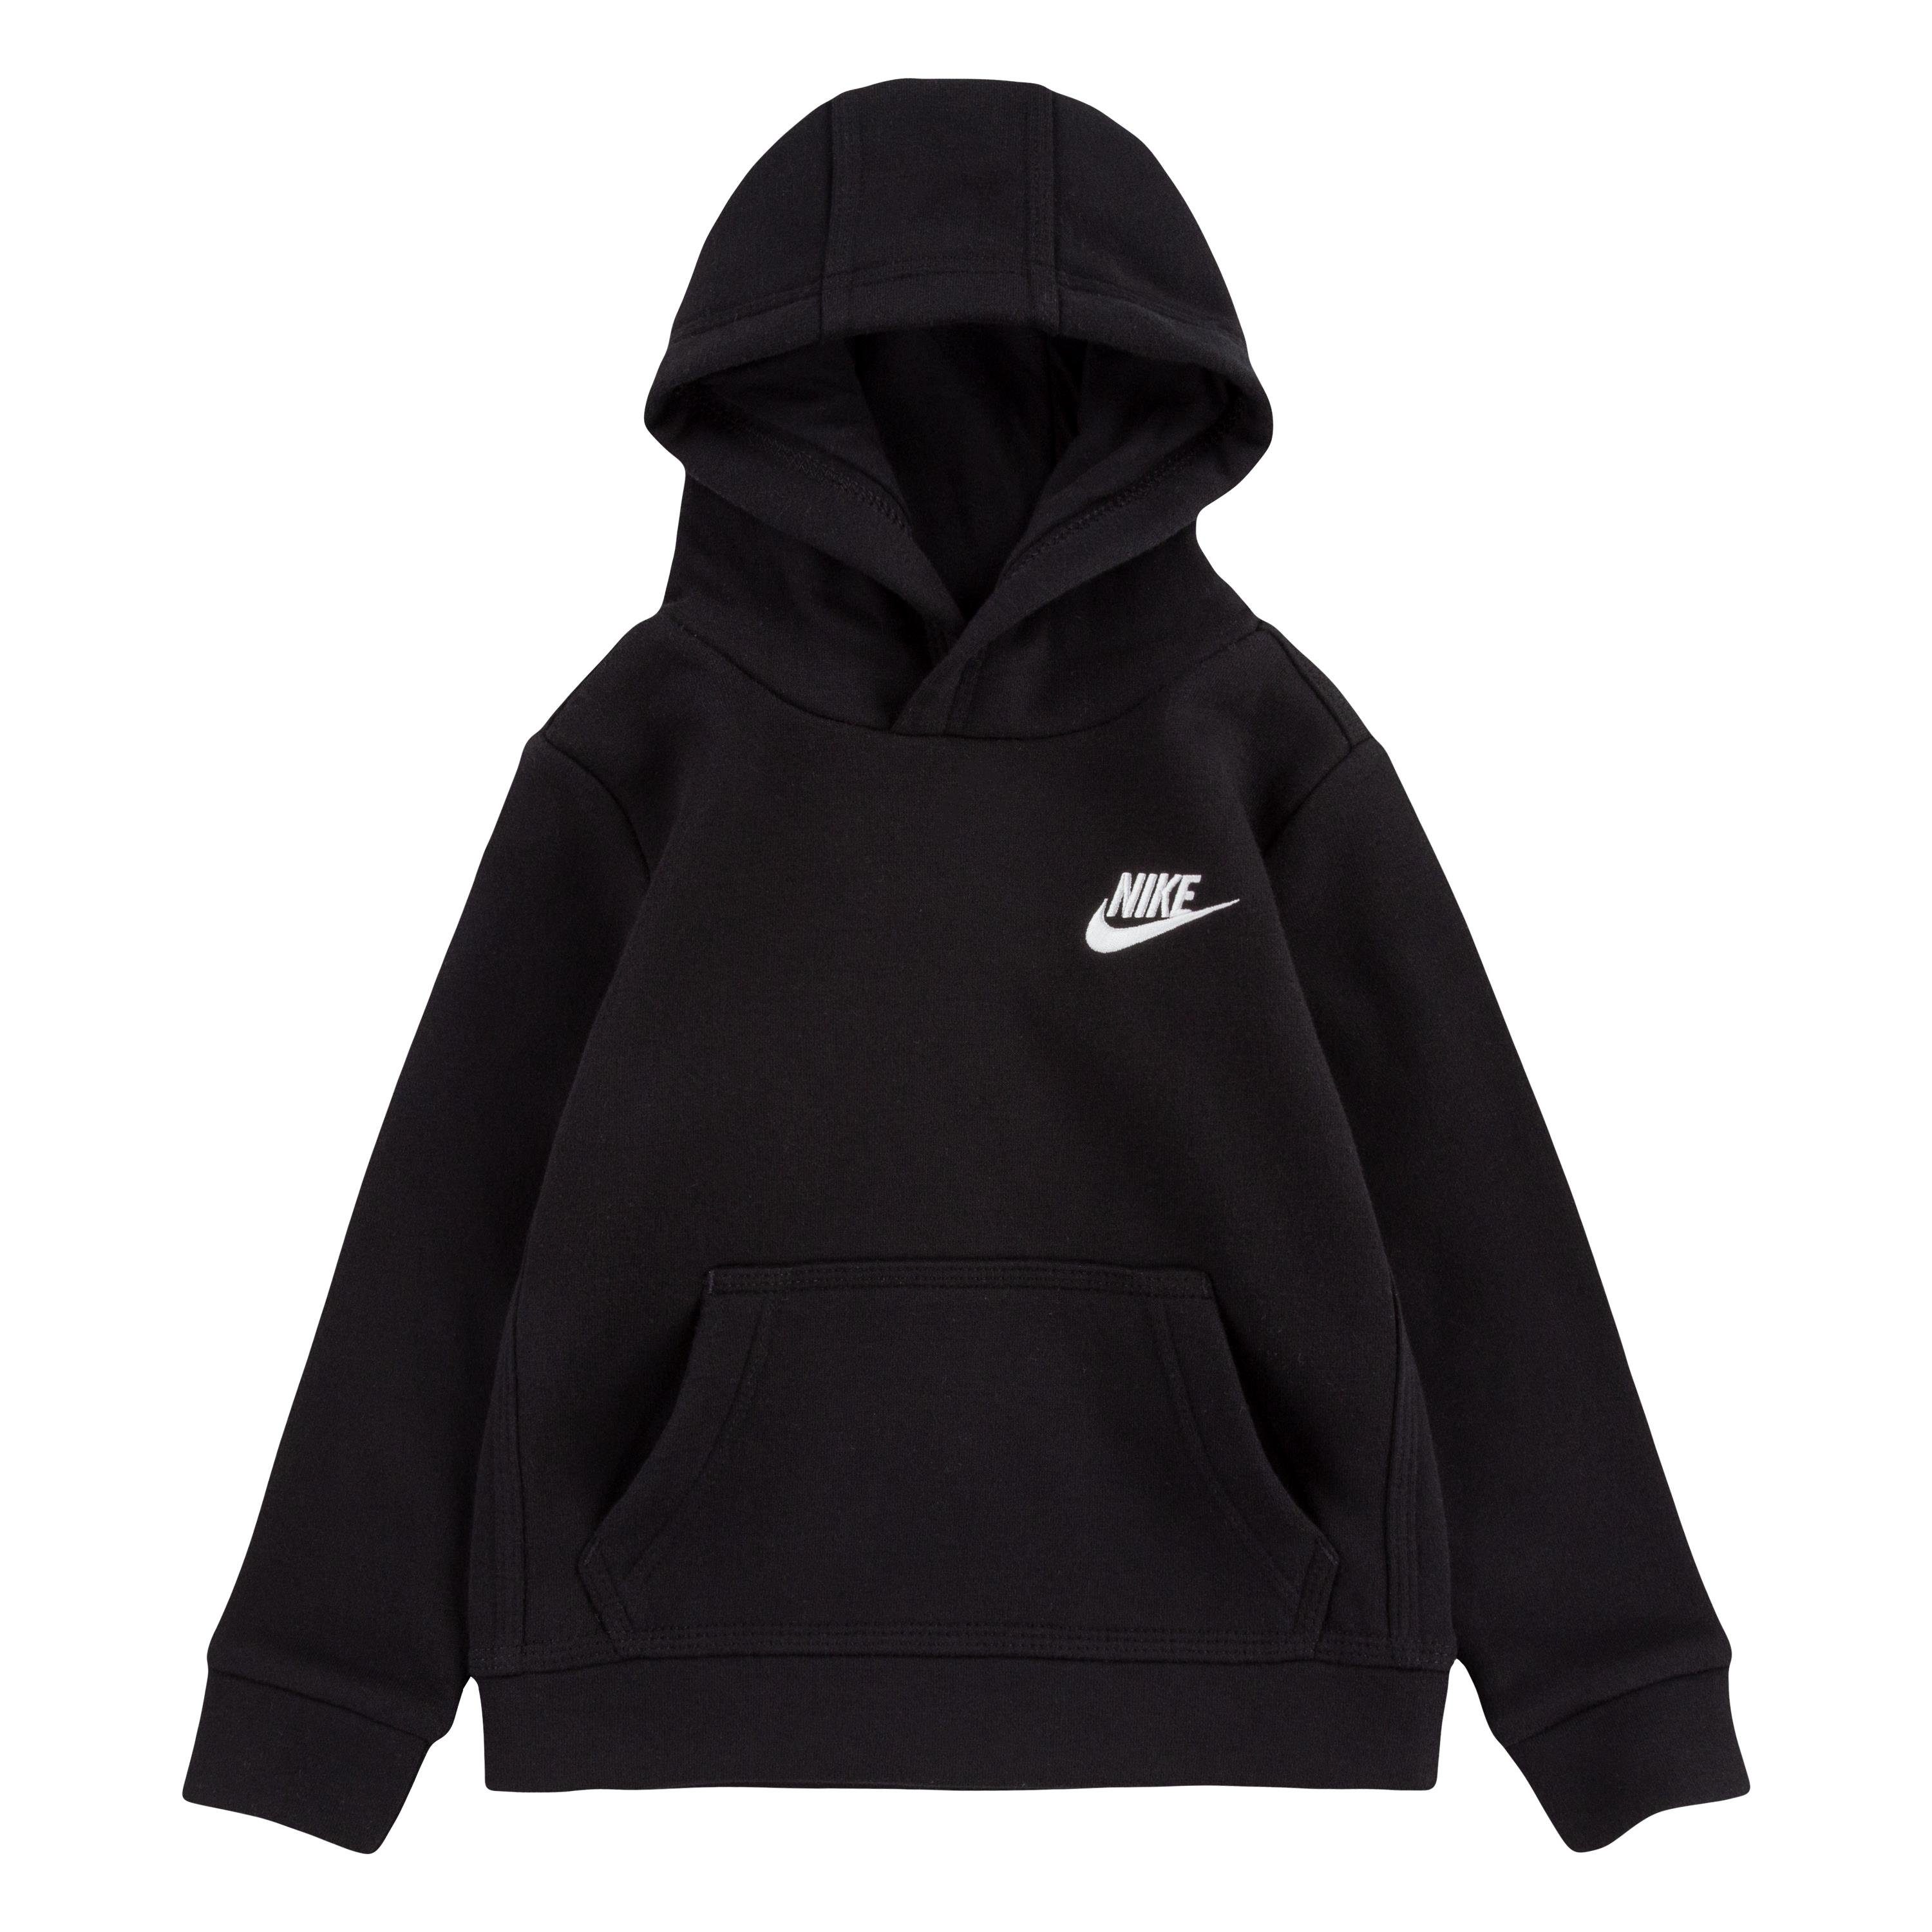 Kinder FLEECE CLUB - Nike schwarz Kapuzensweatshirt PO HOODIE NKB für Sportswear